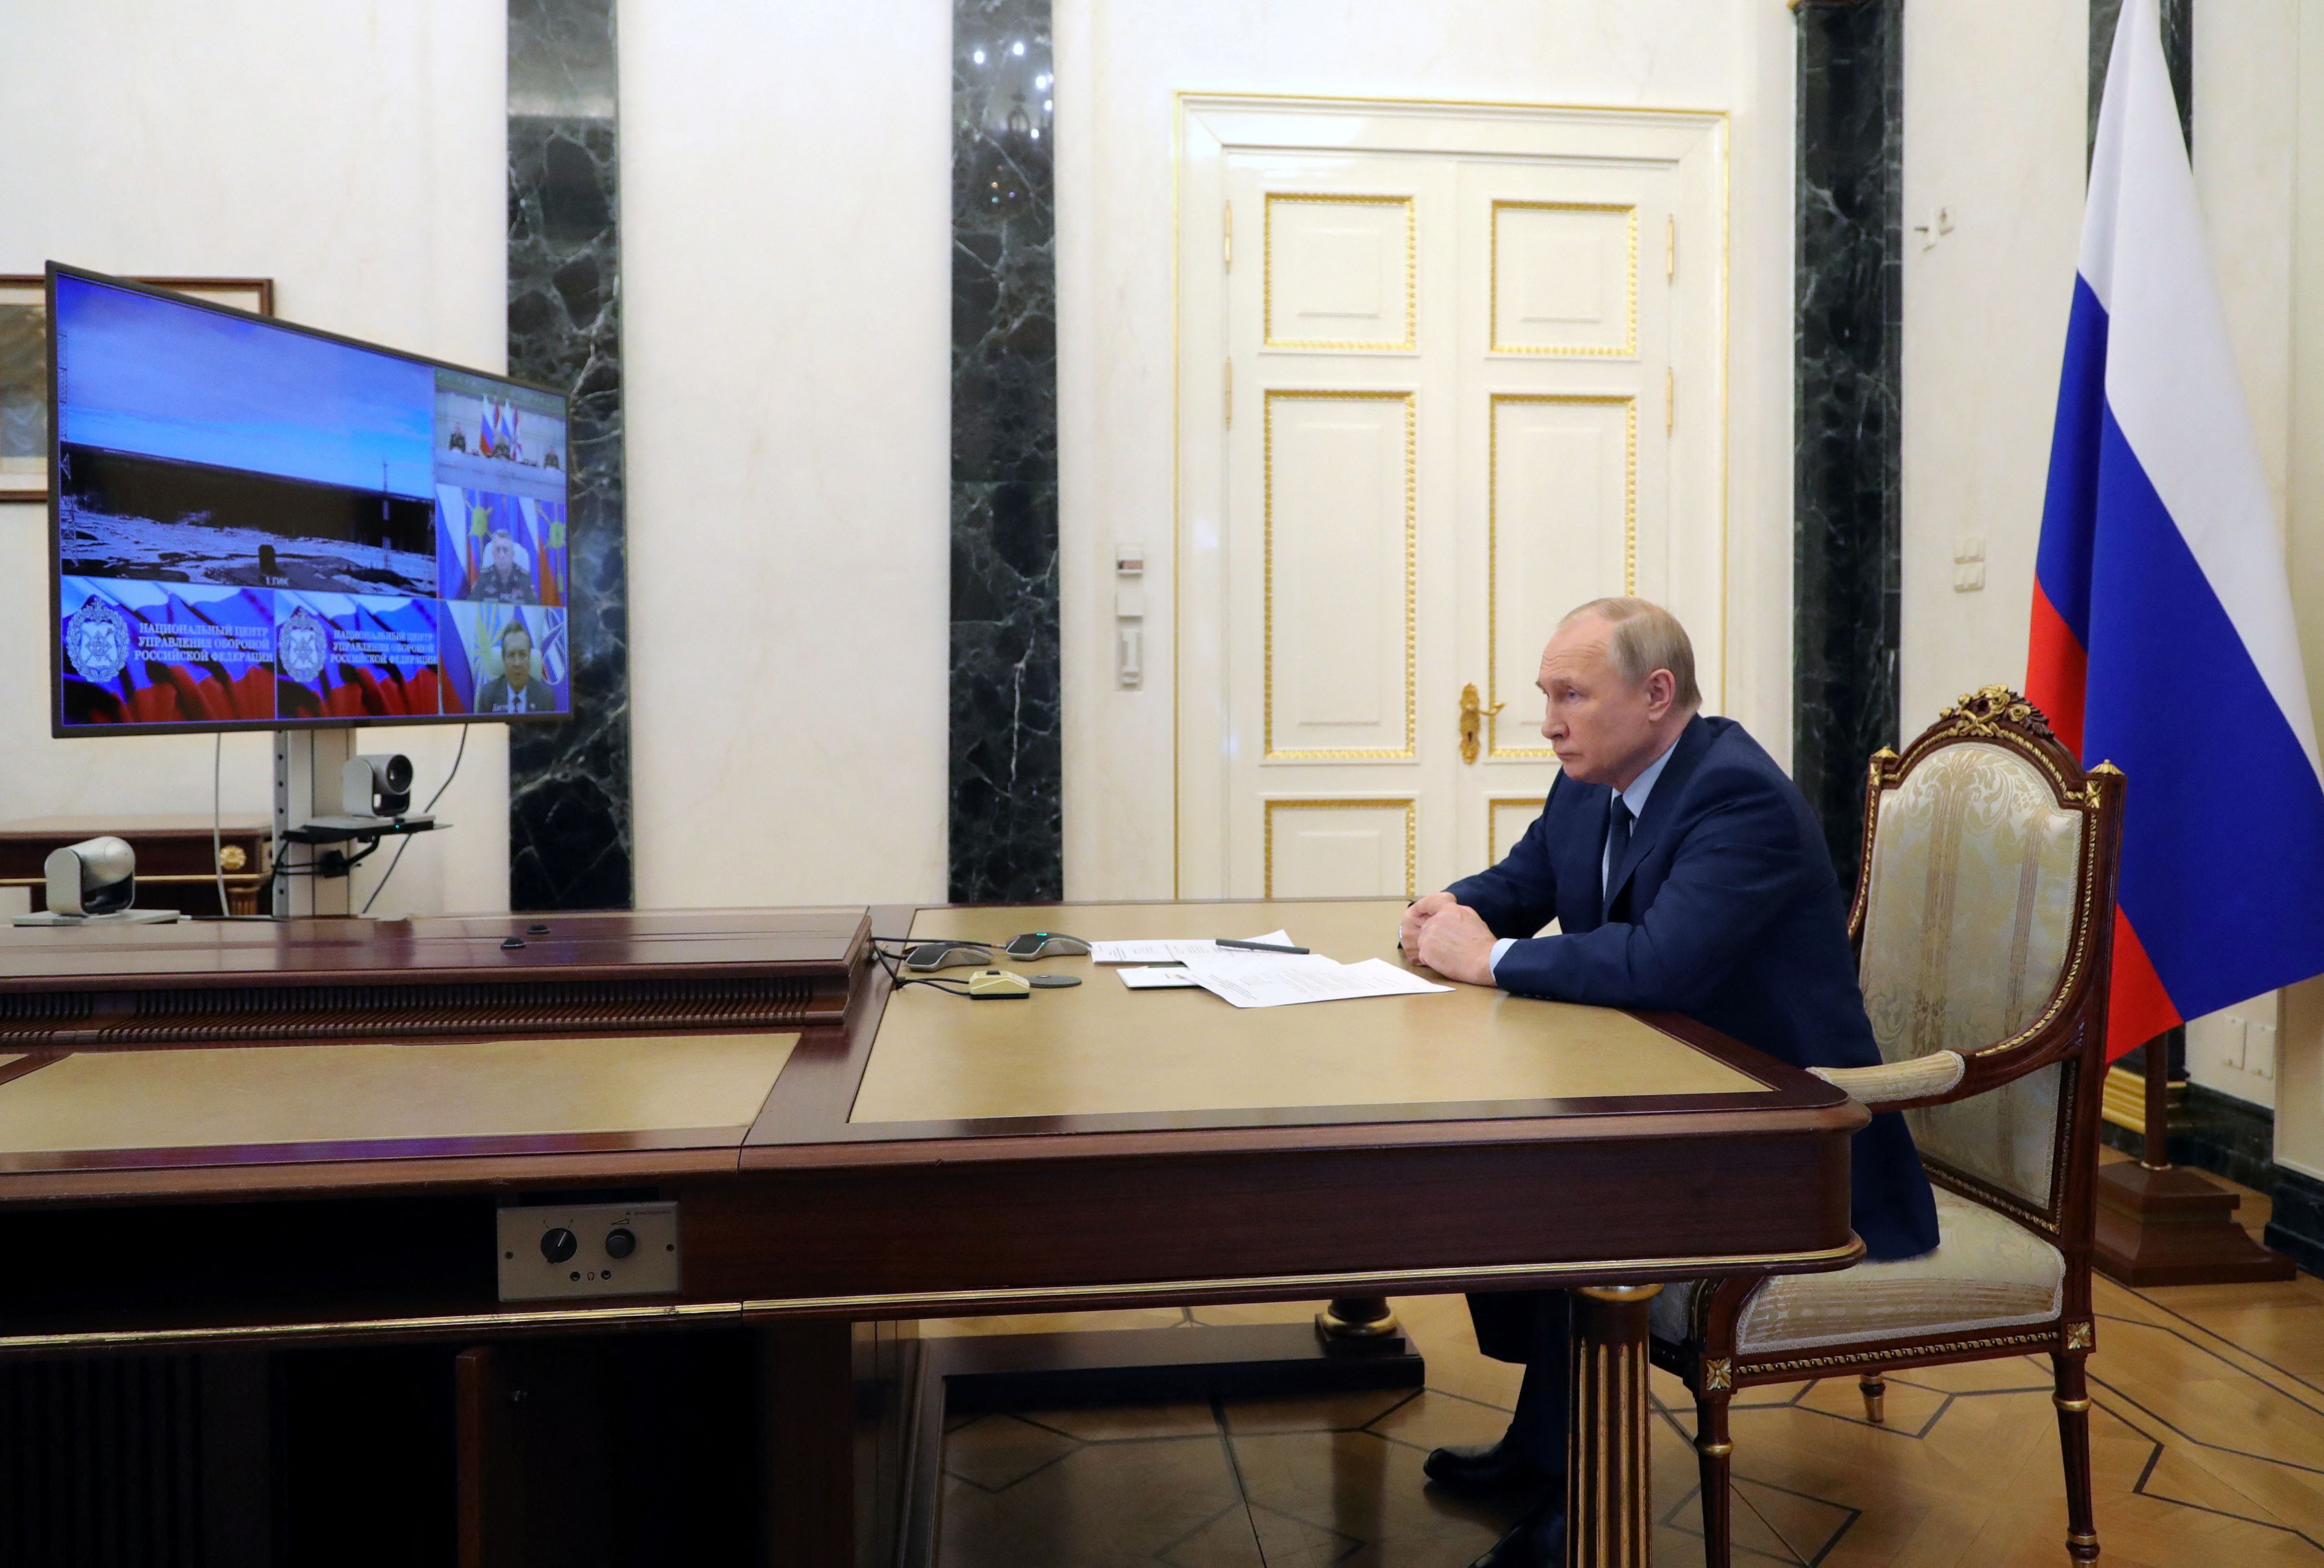 El presidente ruso Vladimir Putin observa un lanzamiento de prueba del misil balístico intercontinental Sarmat en el cosmódromo de Plesetsk en la región de Arkhangelsk, a través de un enlace de video en Moscú, Rusia, el 20 de abril de 2022 (Sputnik/Mikhail Klimentyev/Kremlin via REUTERS)